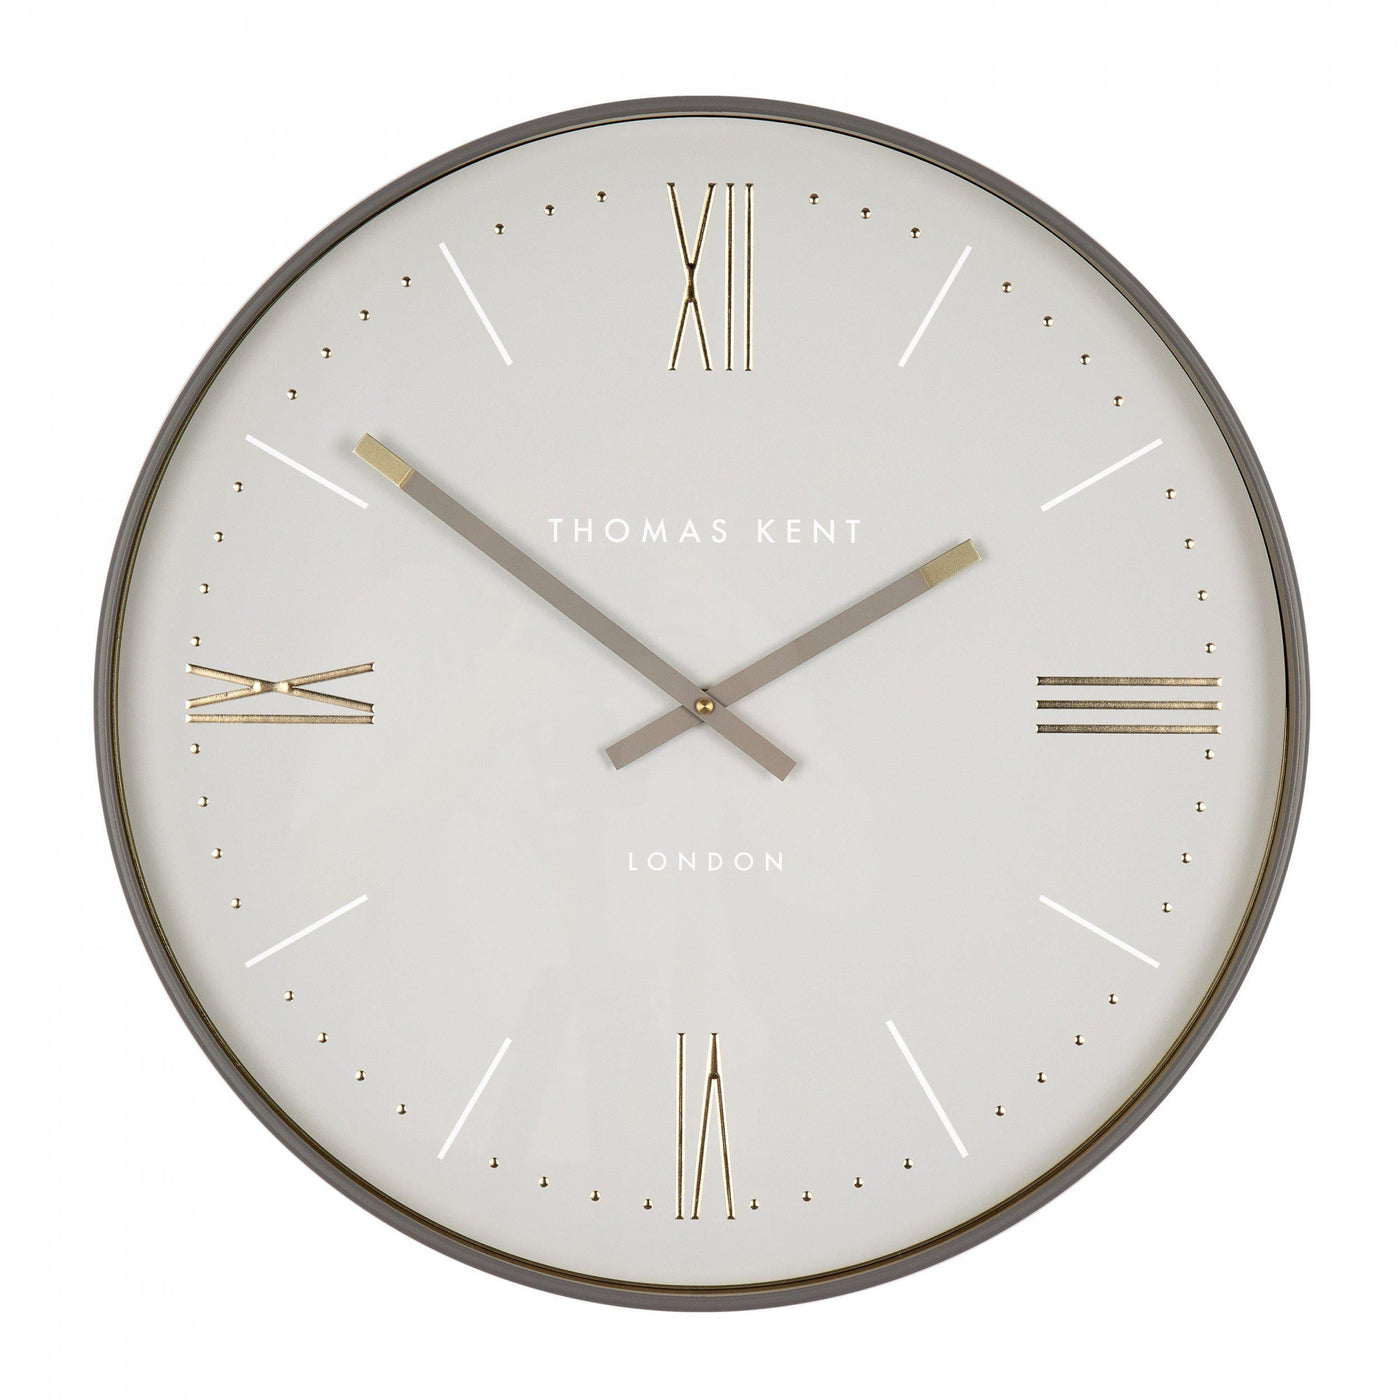 Thomas Kent London. Lexington Wall Clock *NEW STOCK JUNE* - timeframedclocks